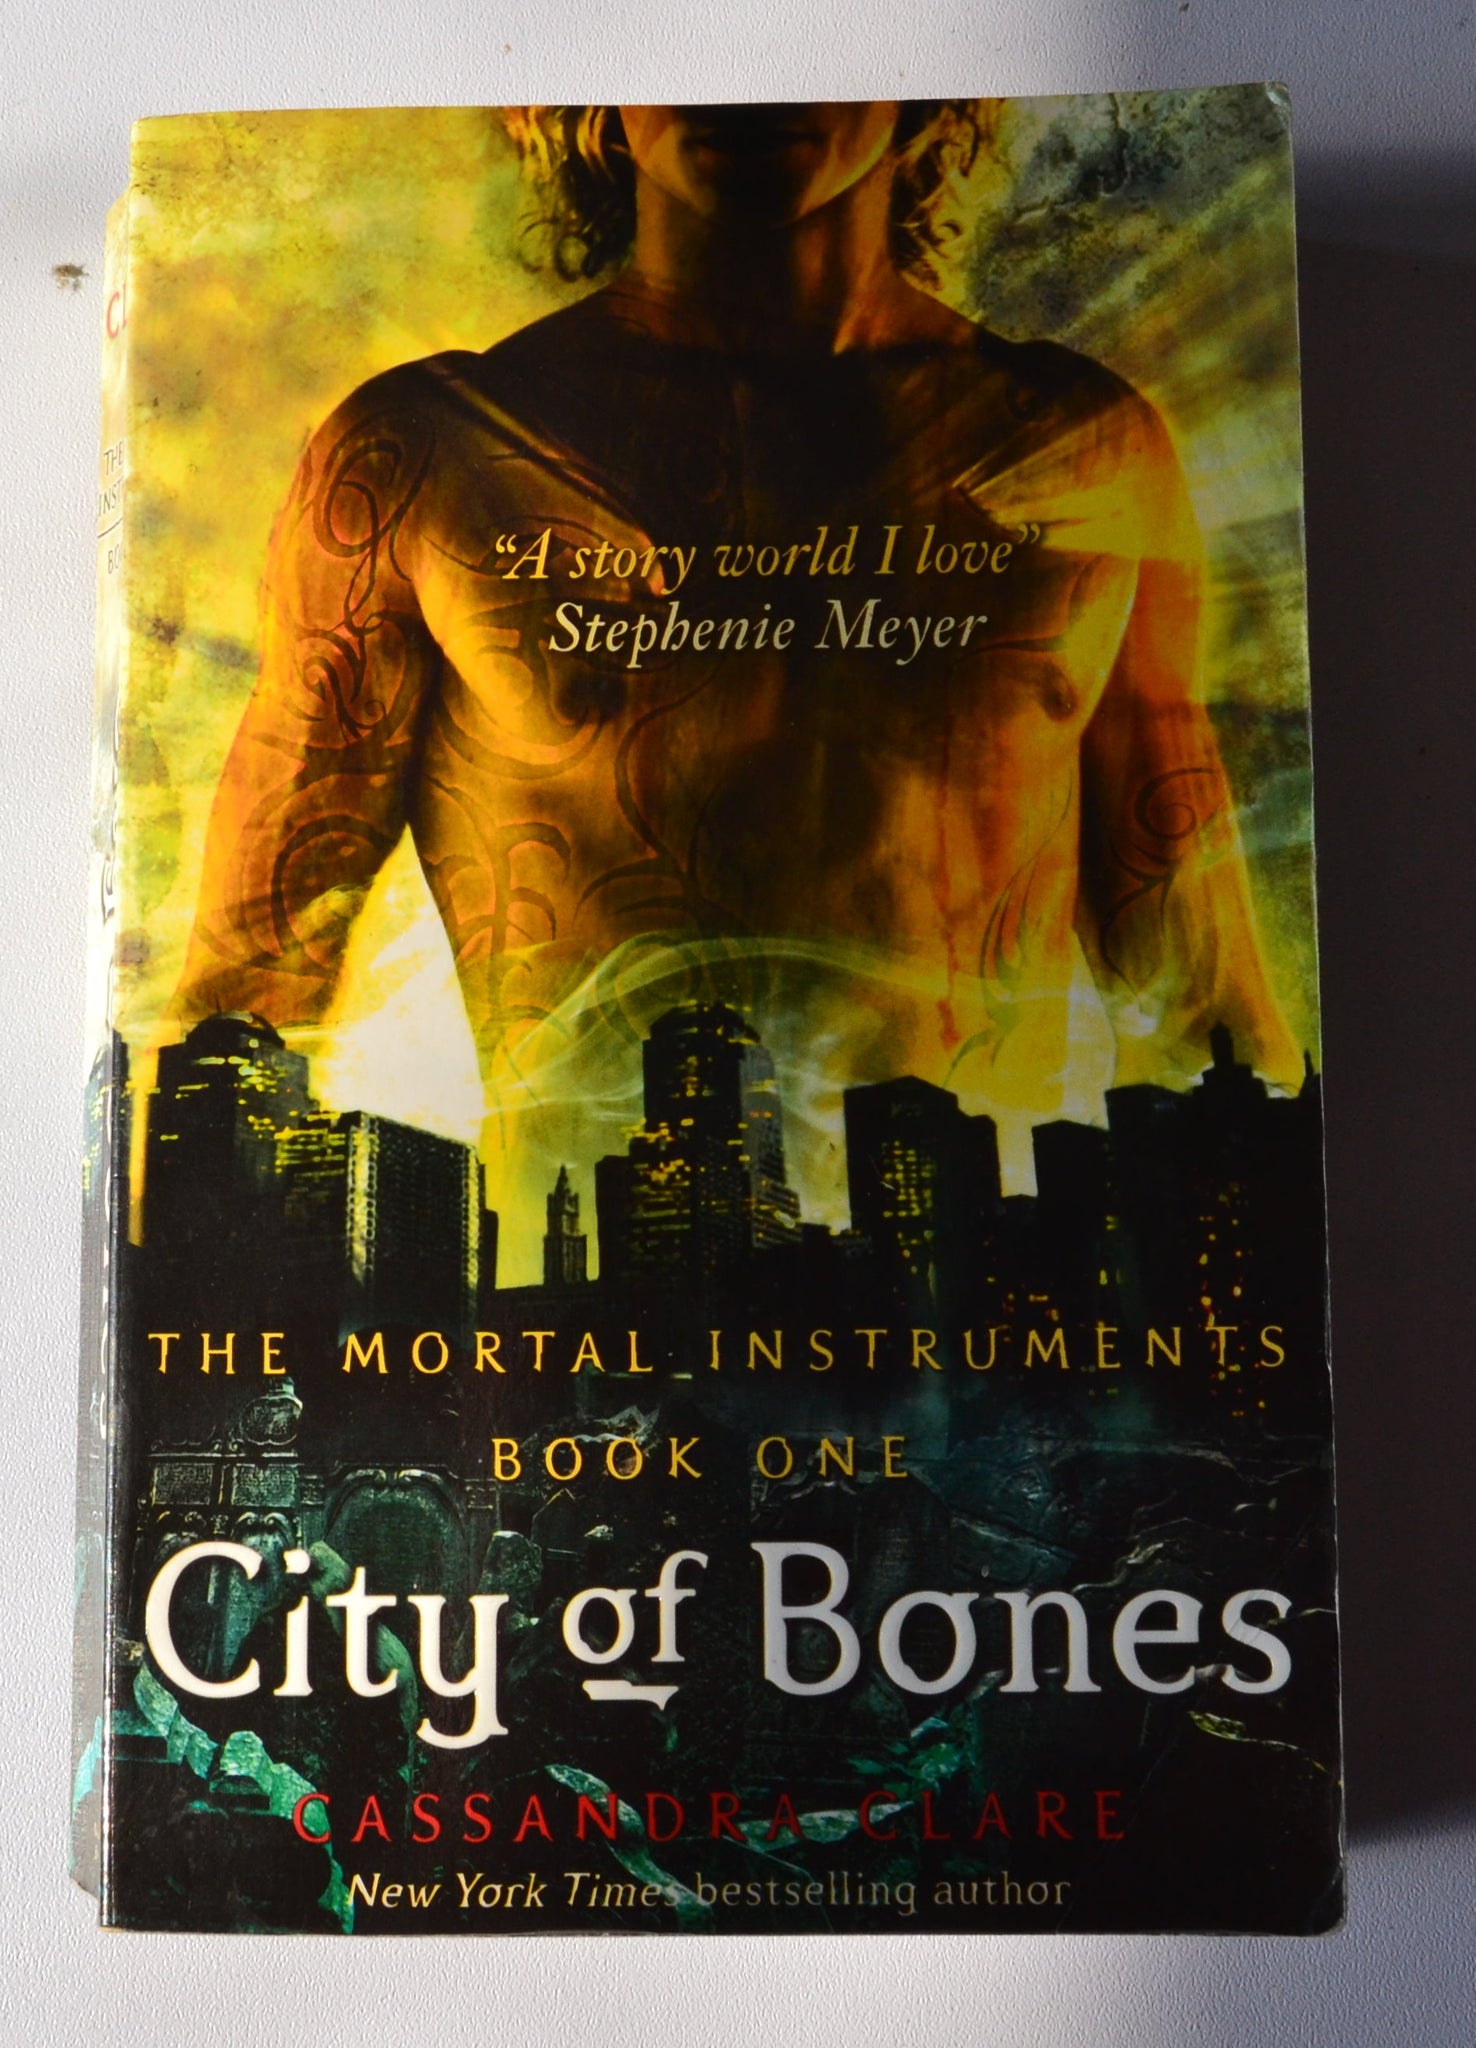 City of Bones - The Mortal Instruments book 1